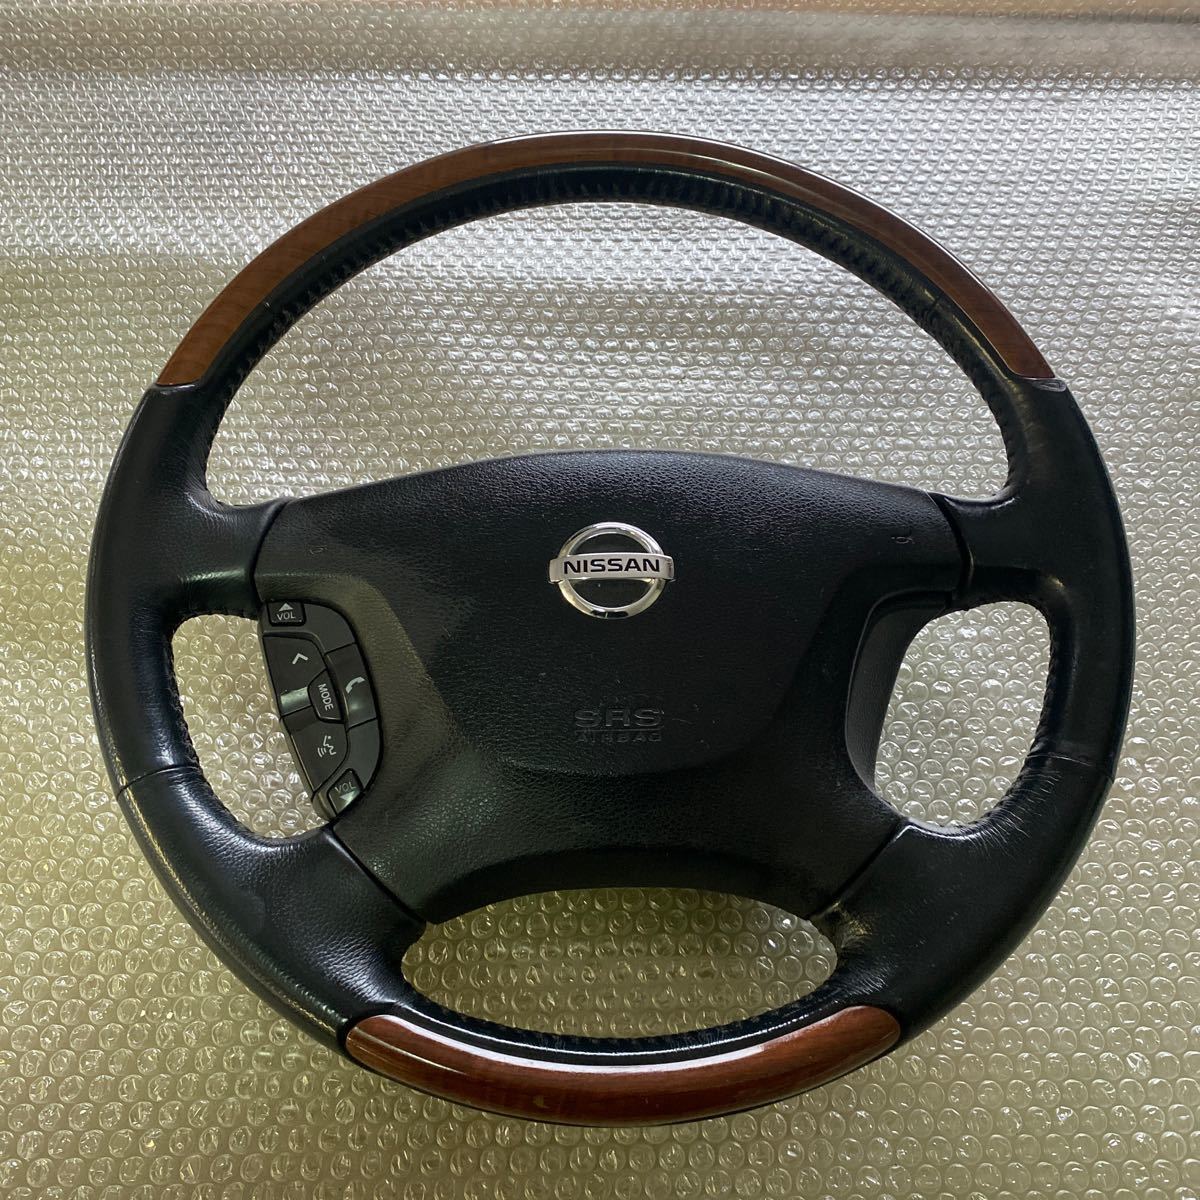  Nissan Elgrand ME51 steering wheel steering gear original steering wheel leather wood combination middle period type 